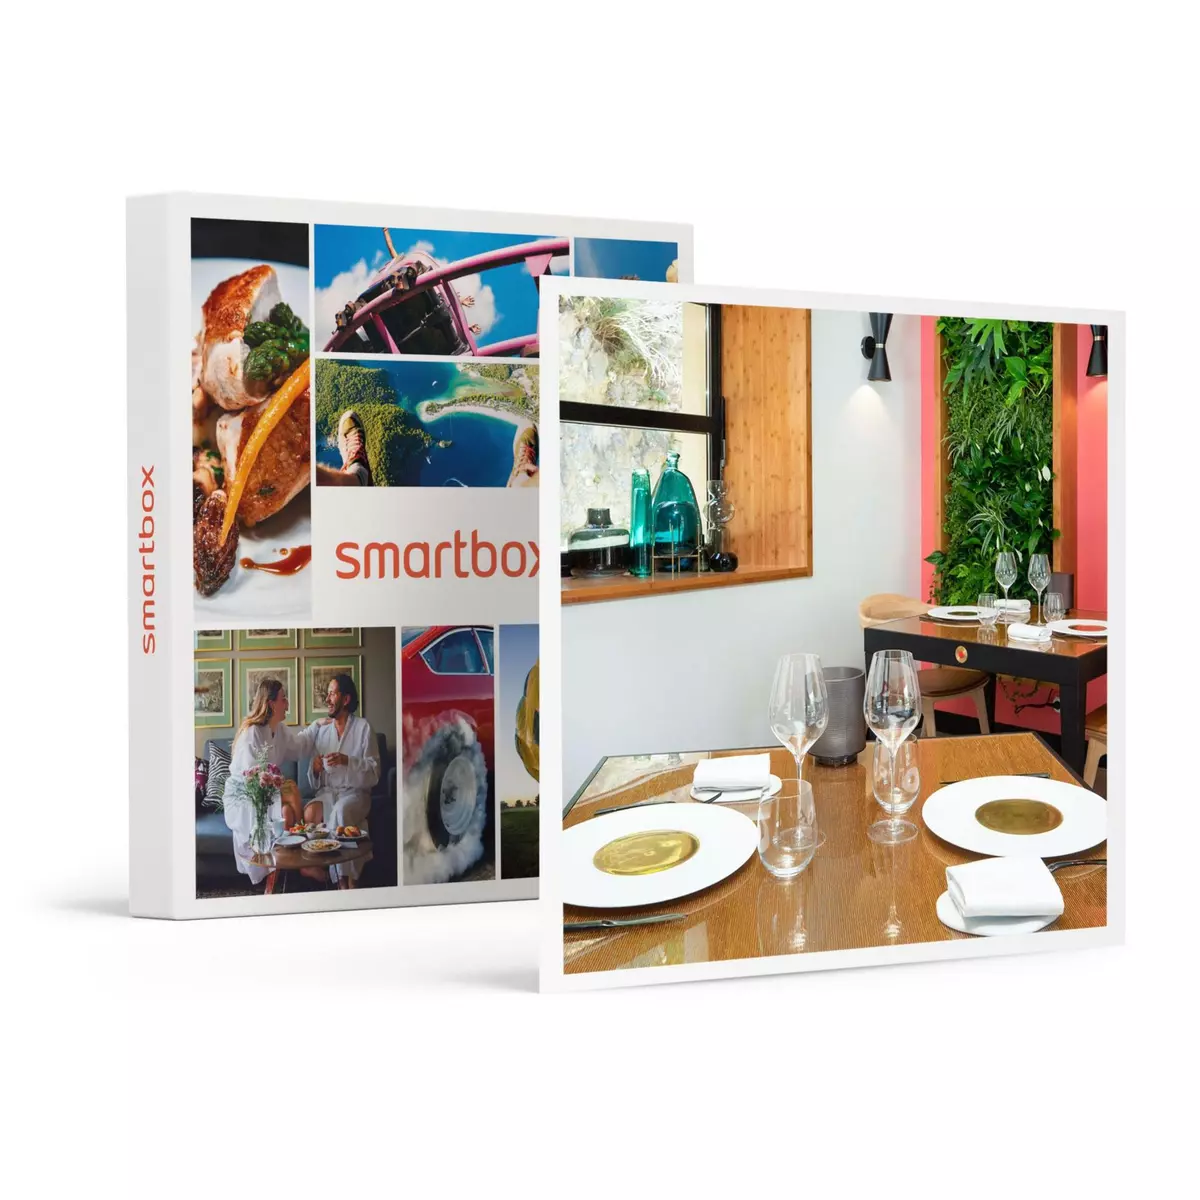 Smartbox Menu 3 plats dans un restaurant une étoile au Guide MICHELIN 2023 près de Carcassonne - Coffret Cadeau Gastronomie